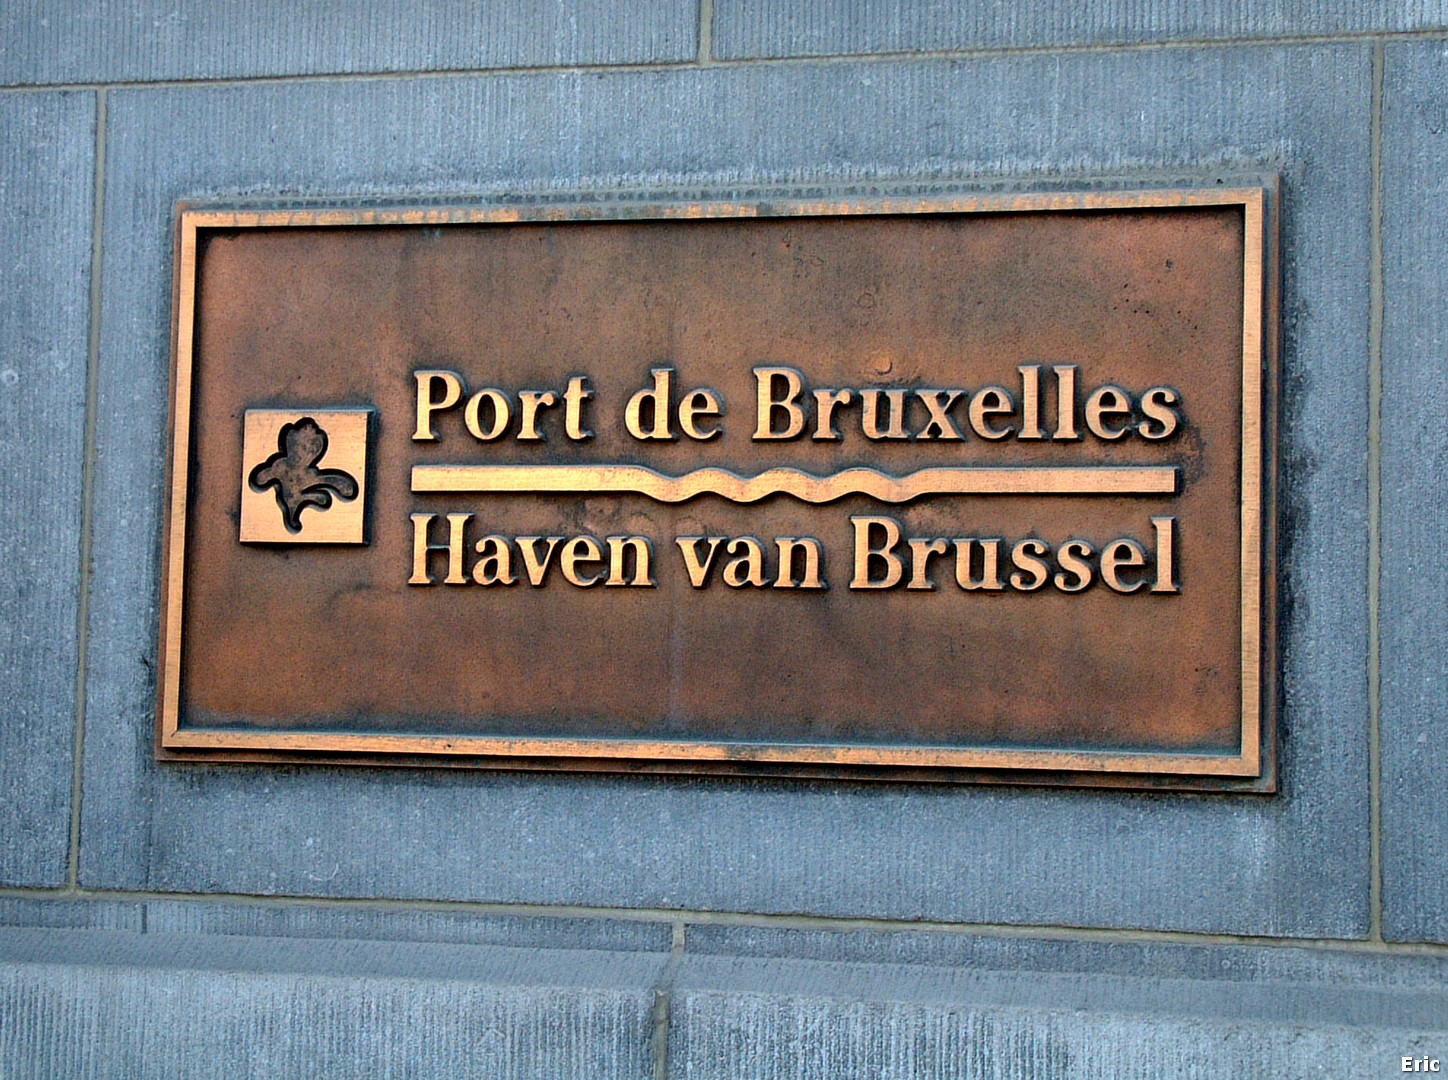 Place des Armateurs (Port de Bruxelles)